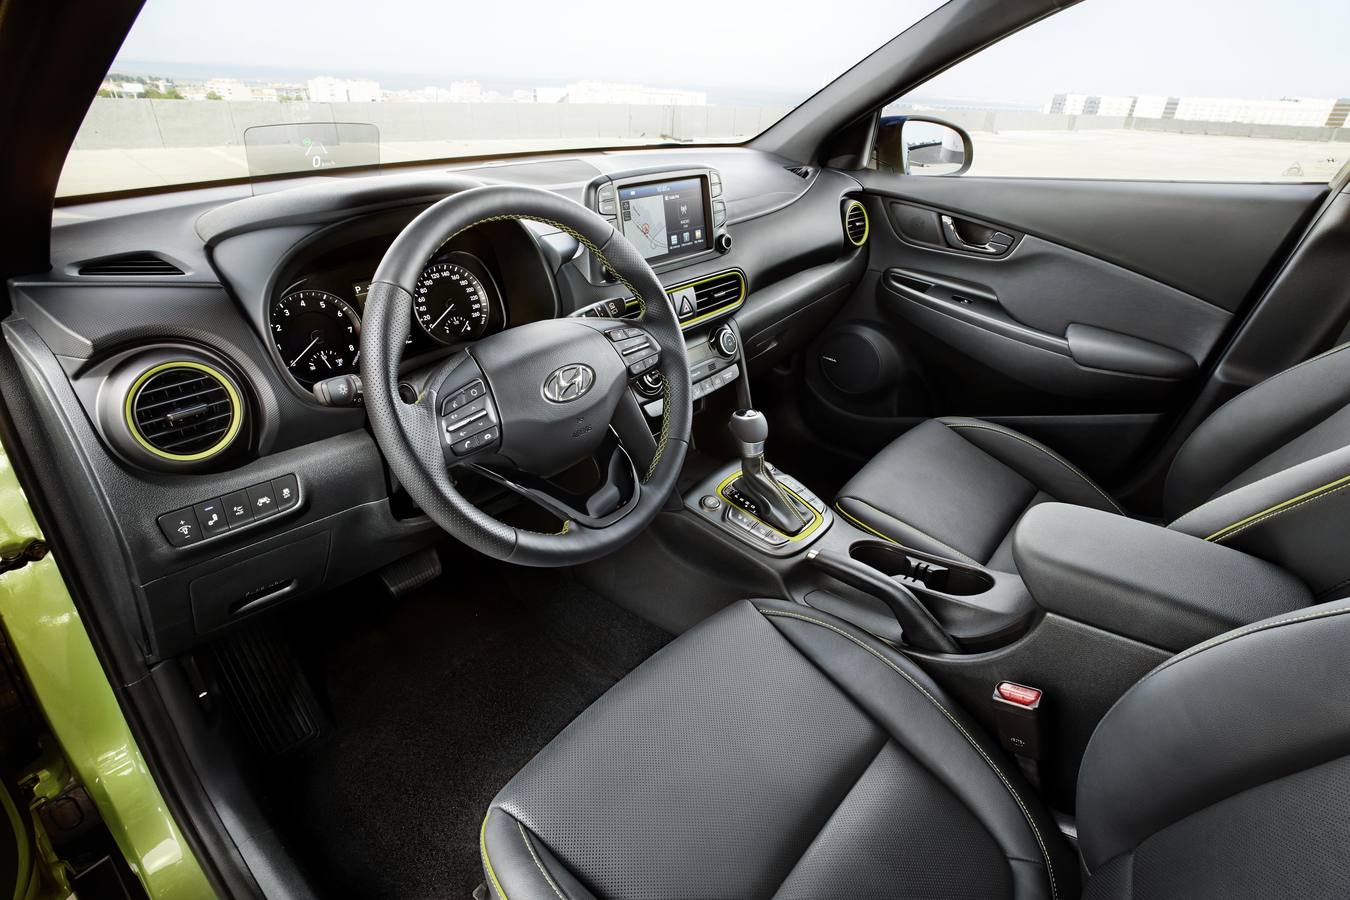 Hyundai amplía la gama con el Kona, un SUV compacto de poco más de 4,10 metros de longitud. A la venta desde 13.990 euros, se comercializa con tracción delantera y también total y cambio manual o automático. 